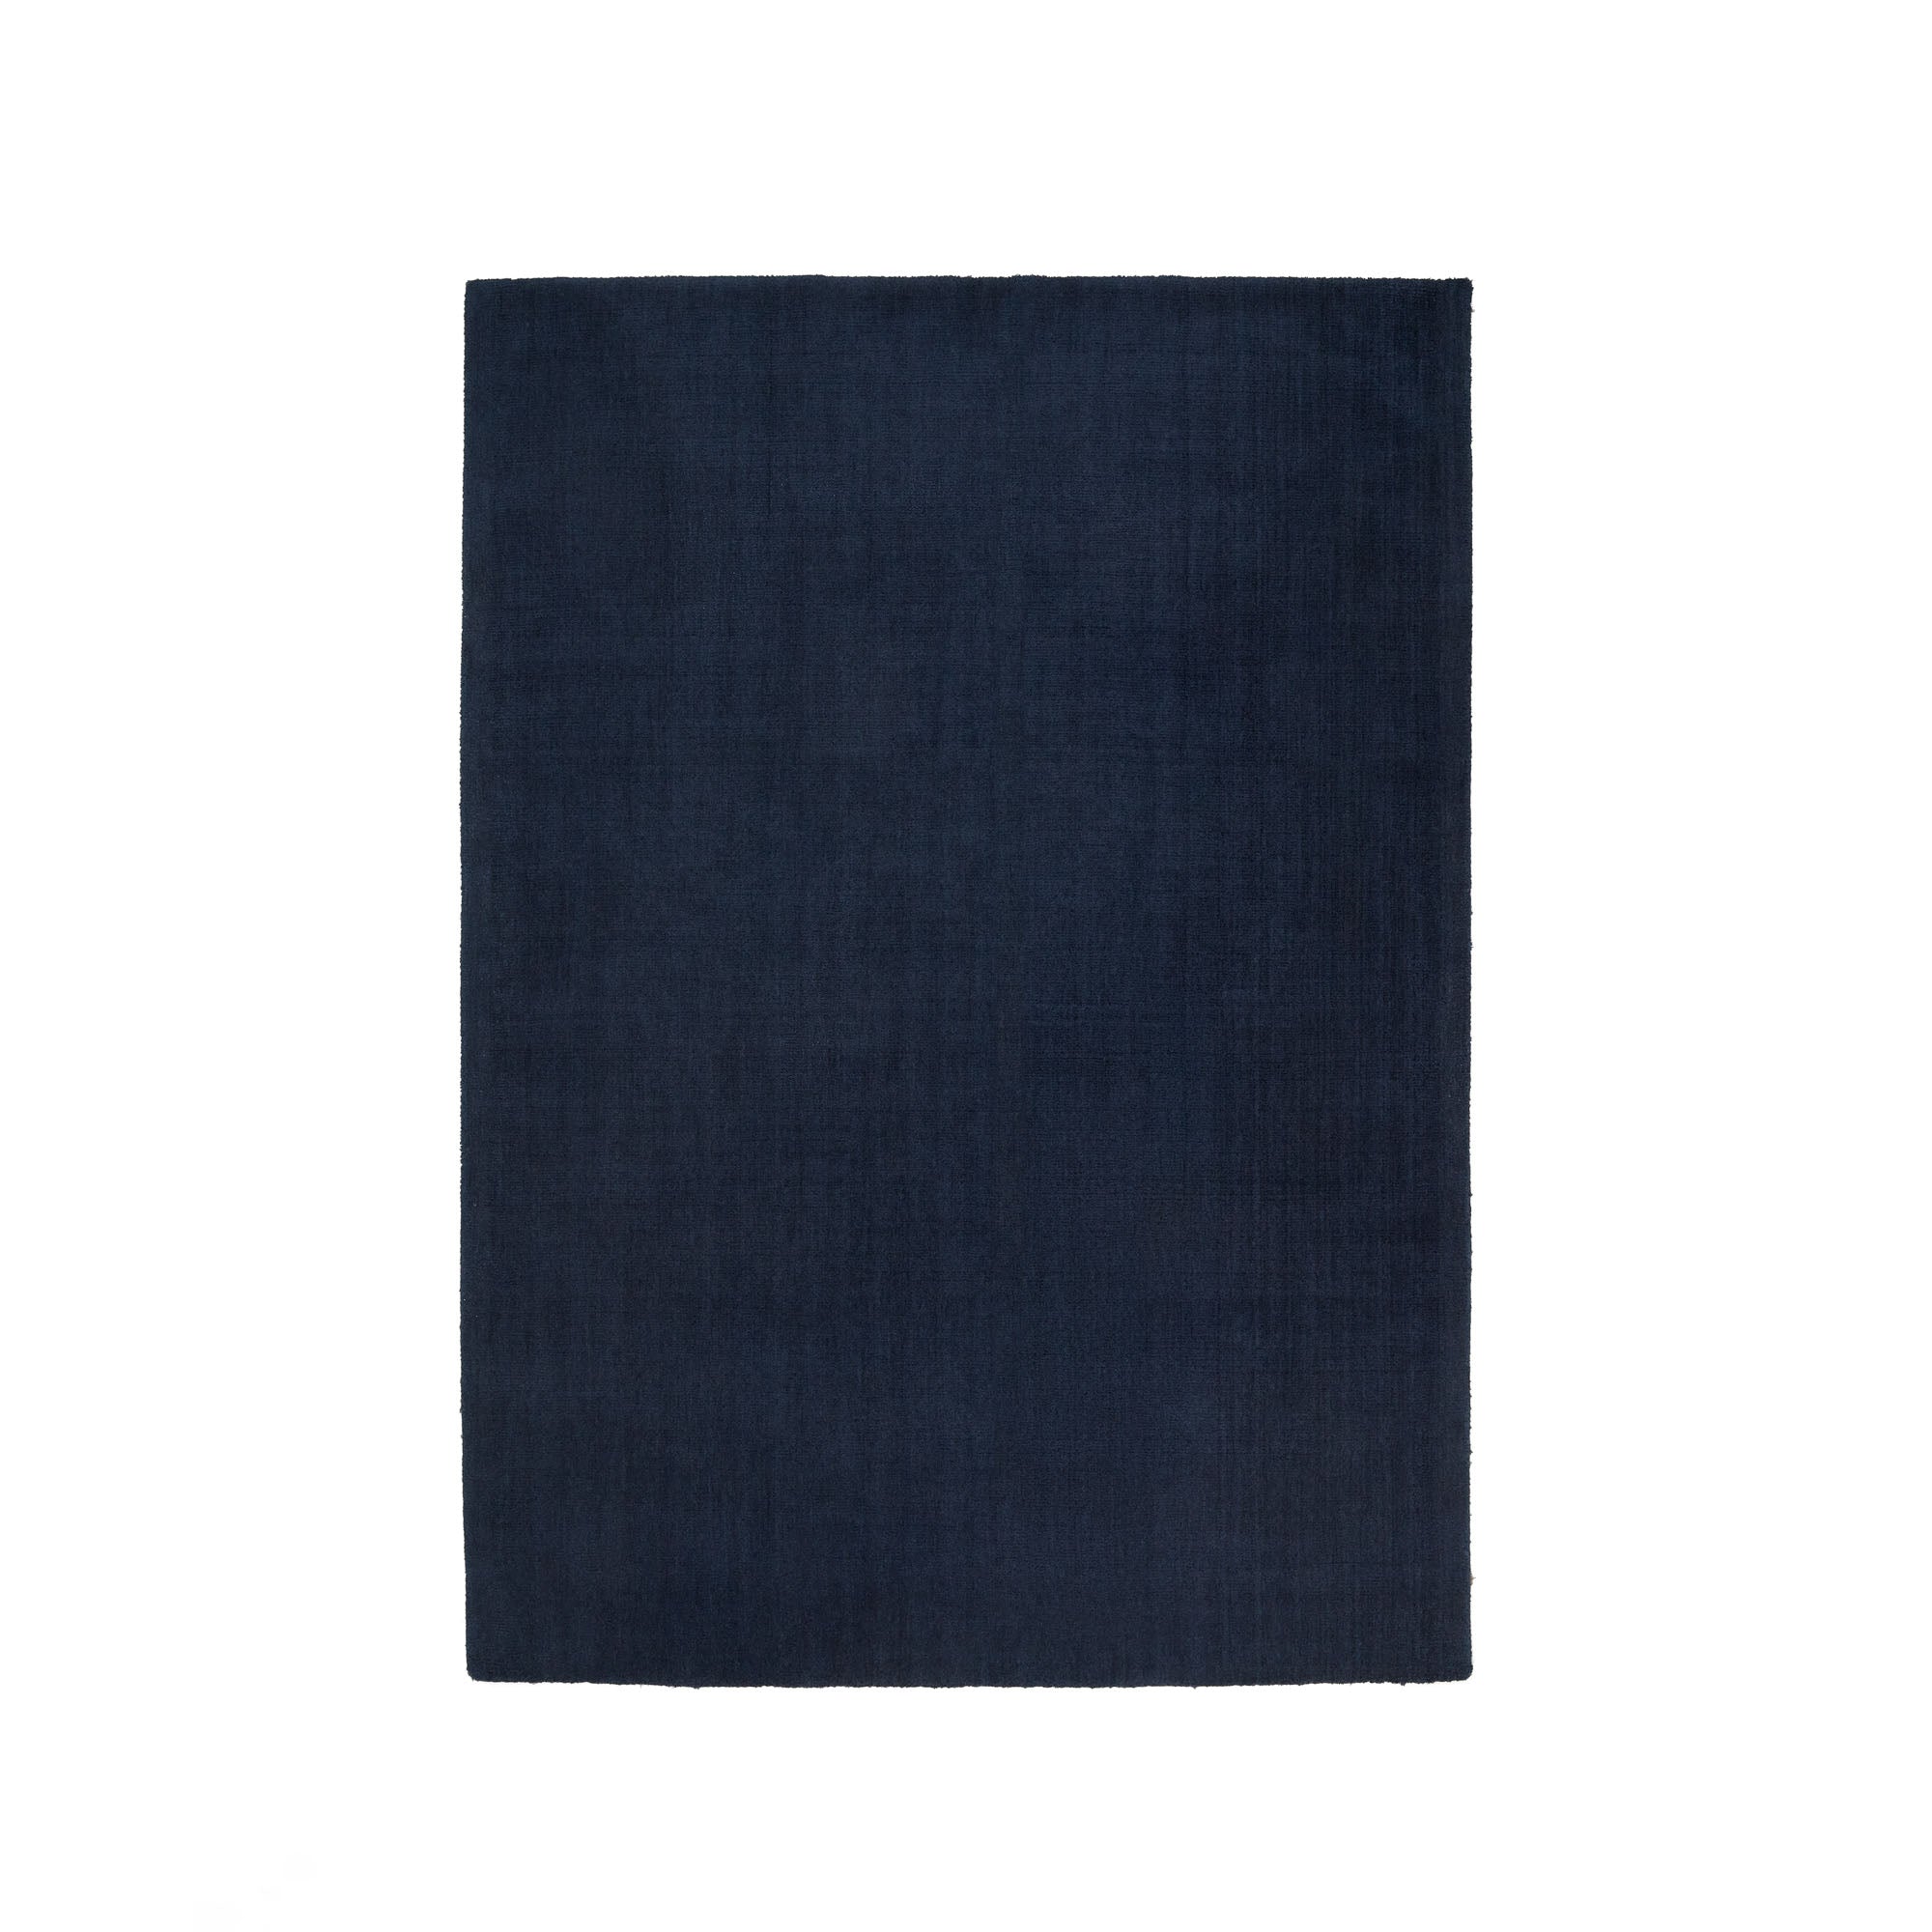 Empuries szőnyeg, kék színben, 160 x 230 cm